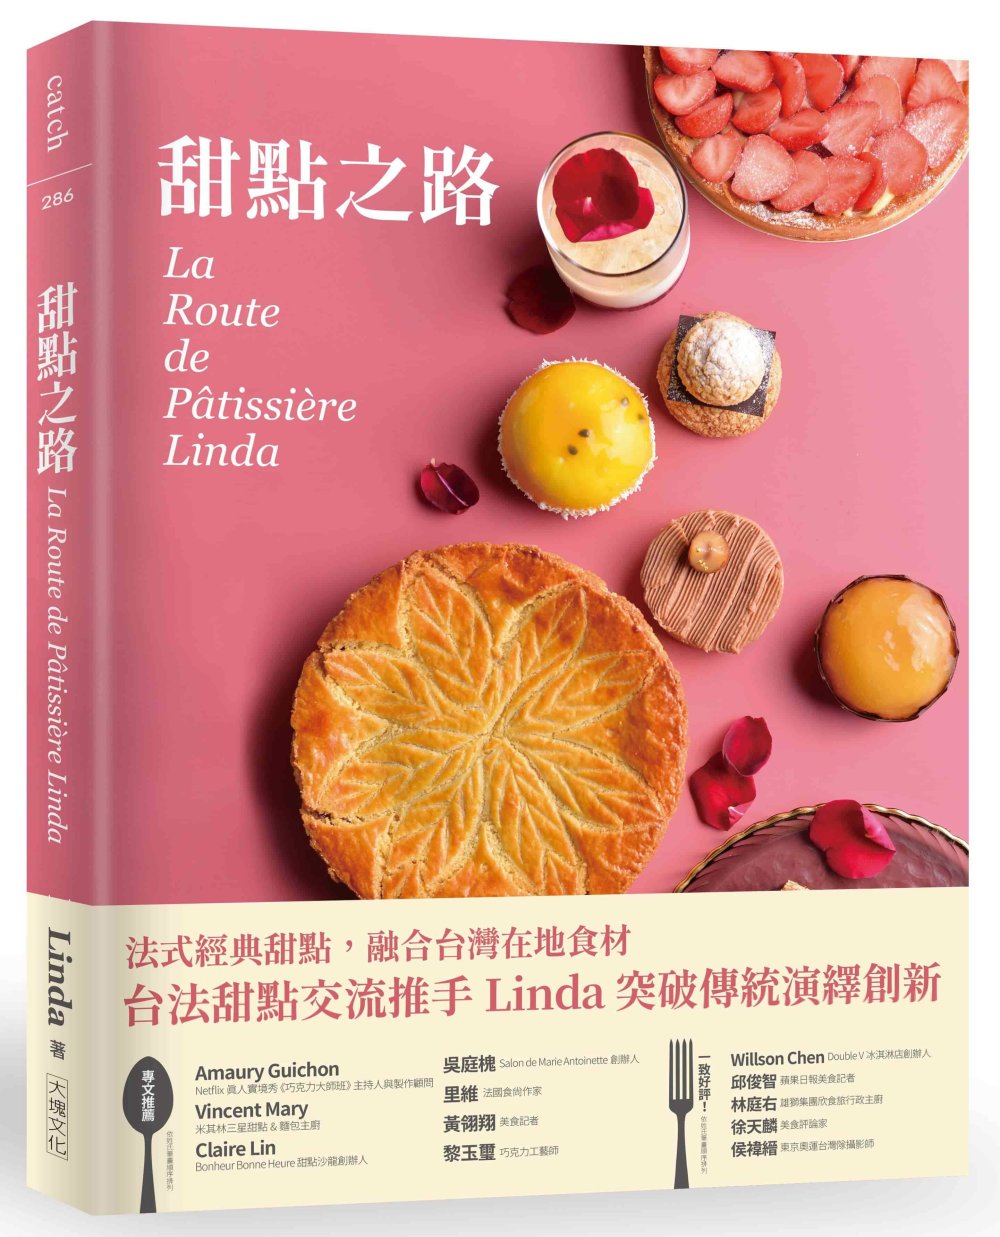 甜點之路 La Route de Pâtissière Linda：跟著台法國際甜點交流推手 Linda， 一起感受法式甜點的美好！從經典、地方傳統到創新， 法式甜點在家也能輕鬆做。